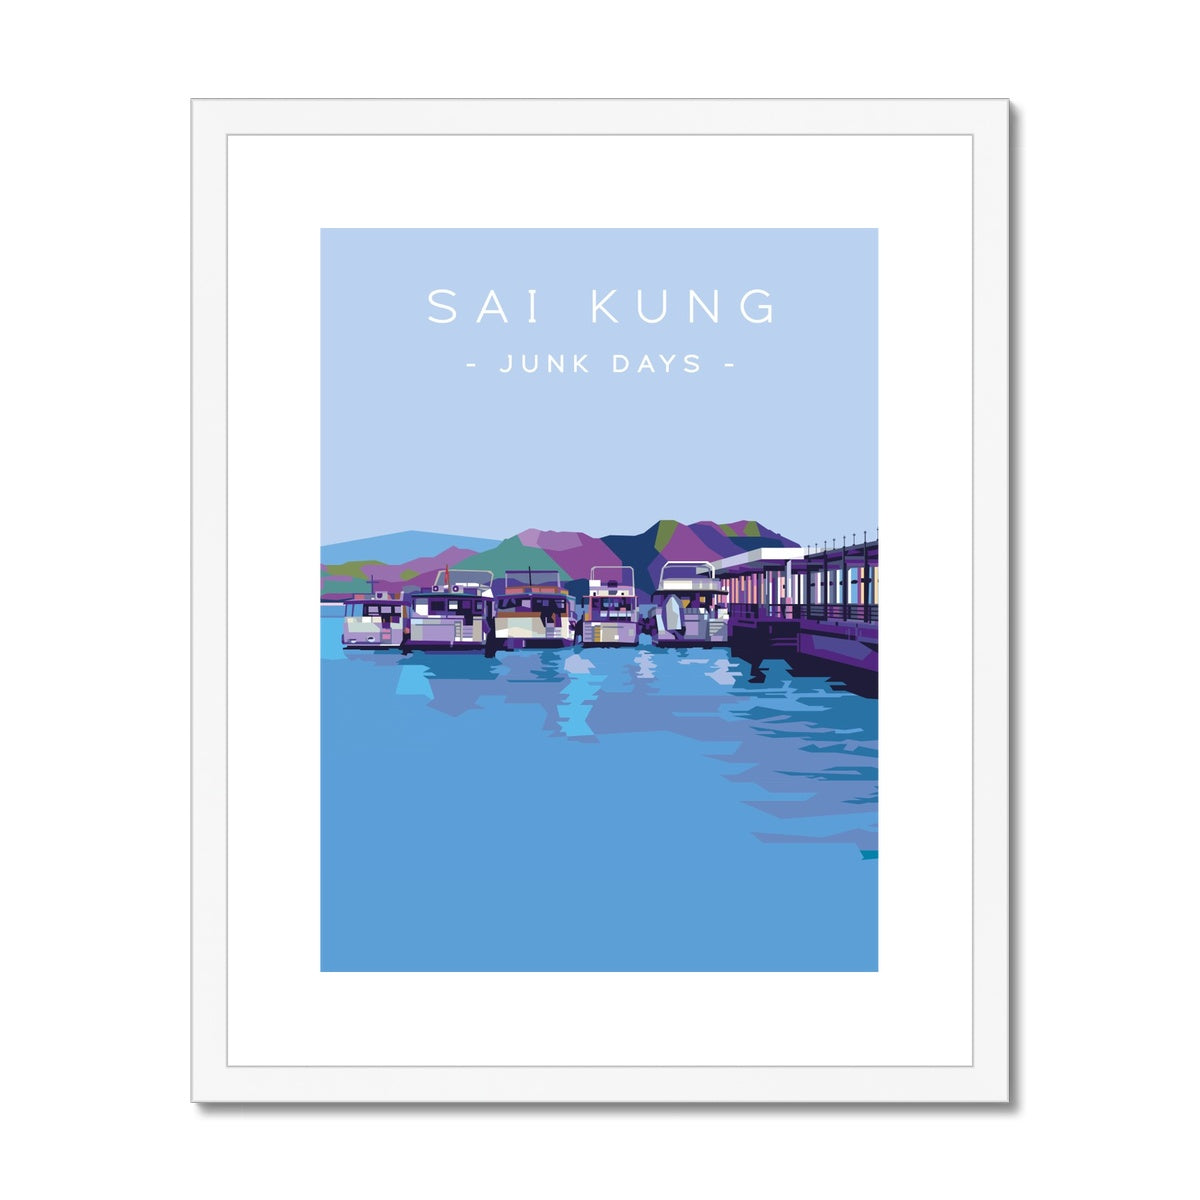 Hong Kong Travel - Sai Kung Junk Days Framed & Mounted Print